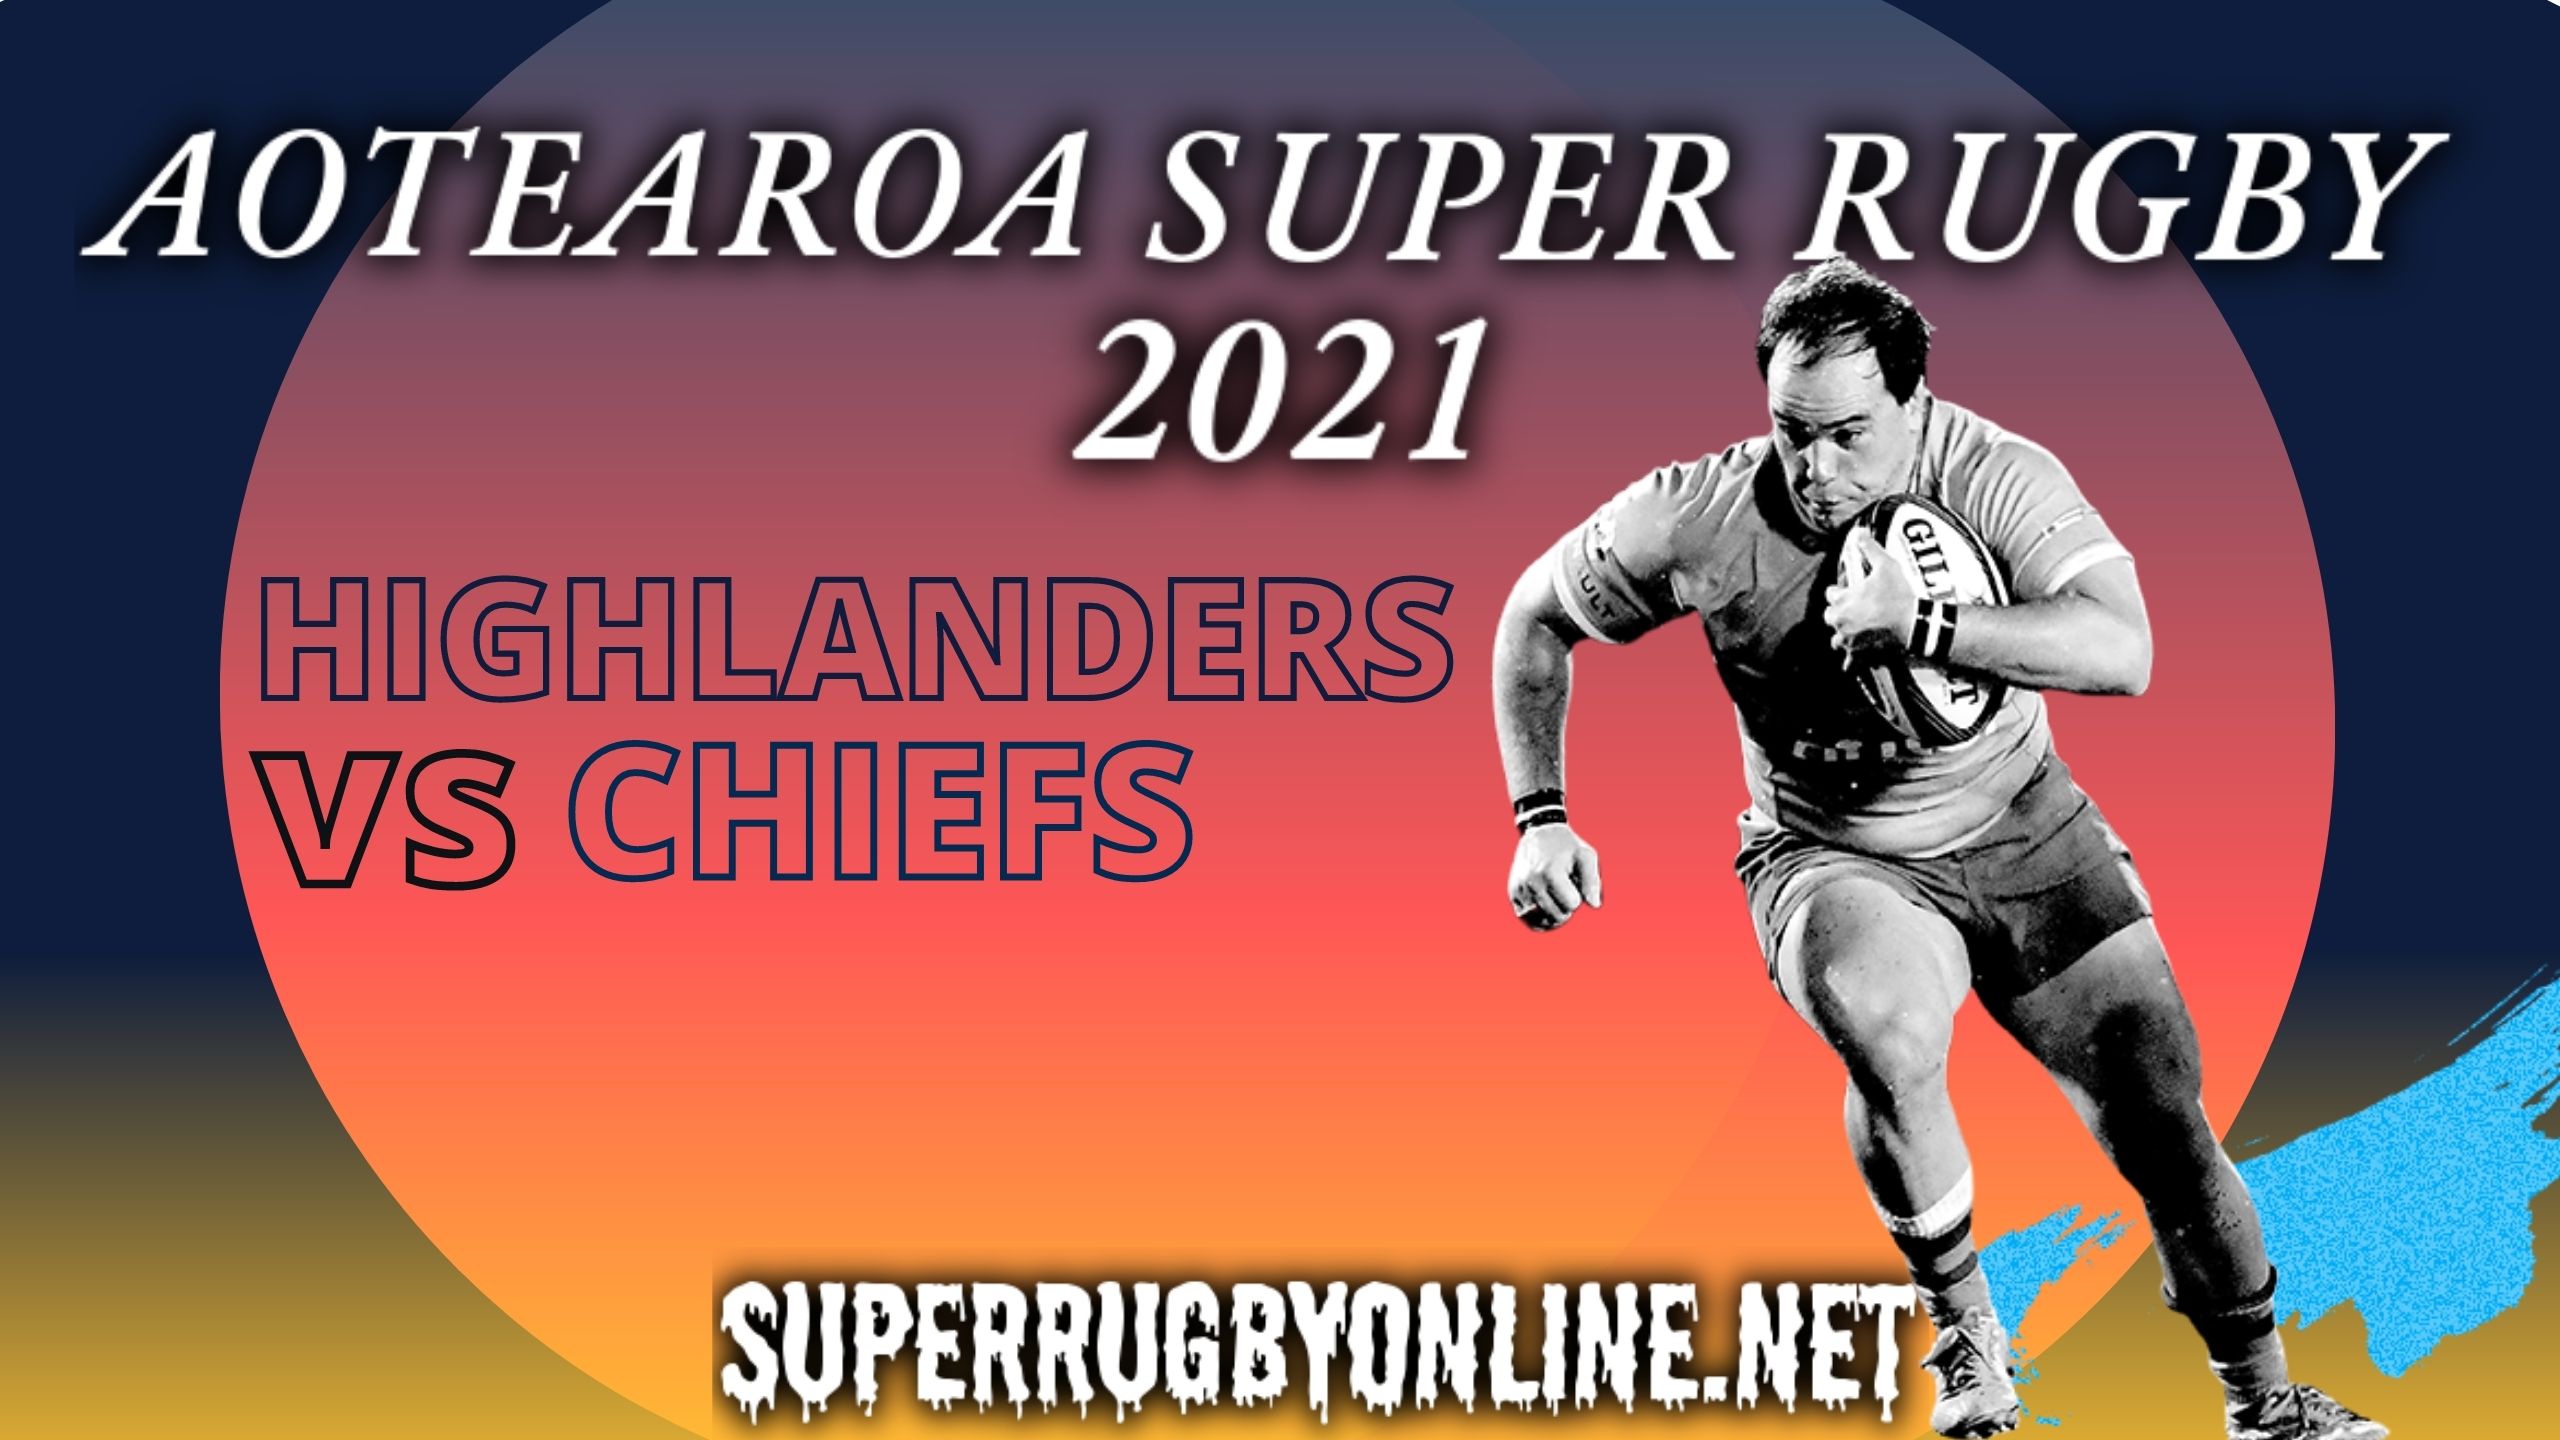 Chiefs Vs Highlanders Rd 2 Highlights 2021